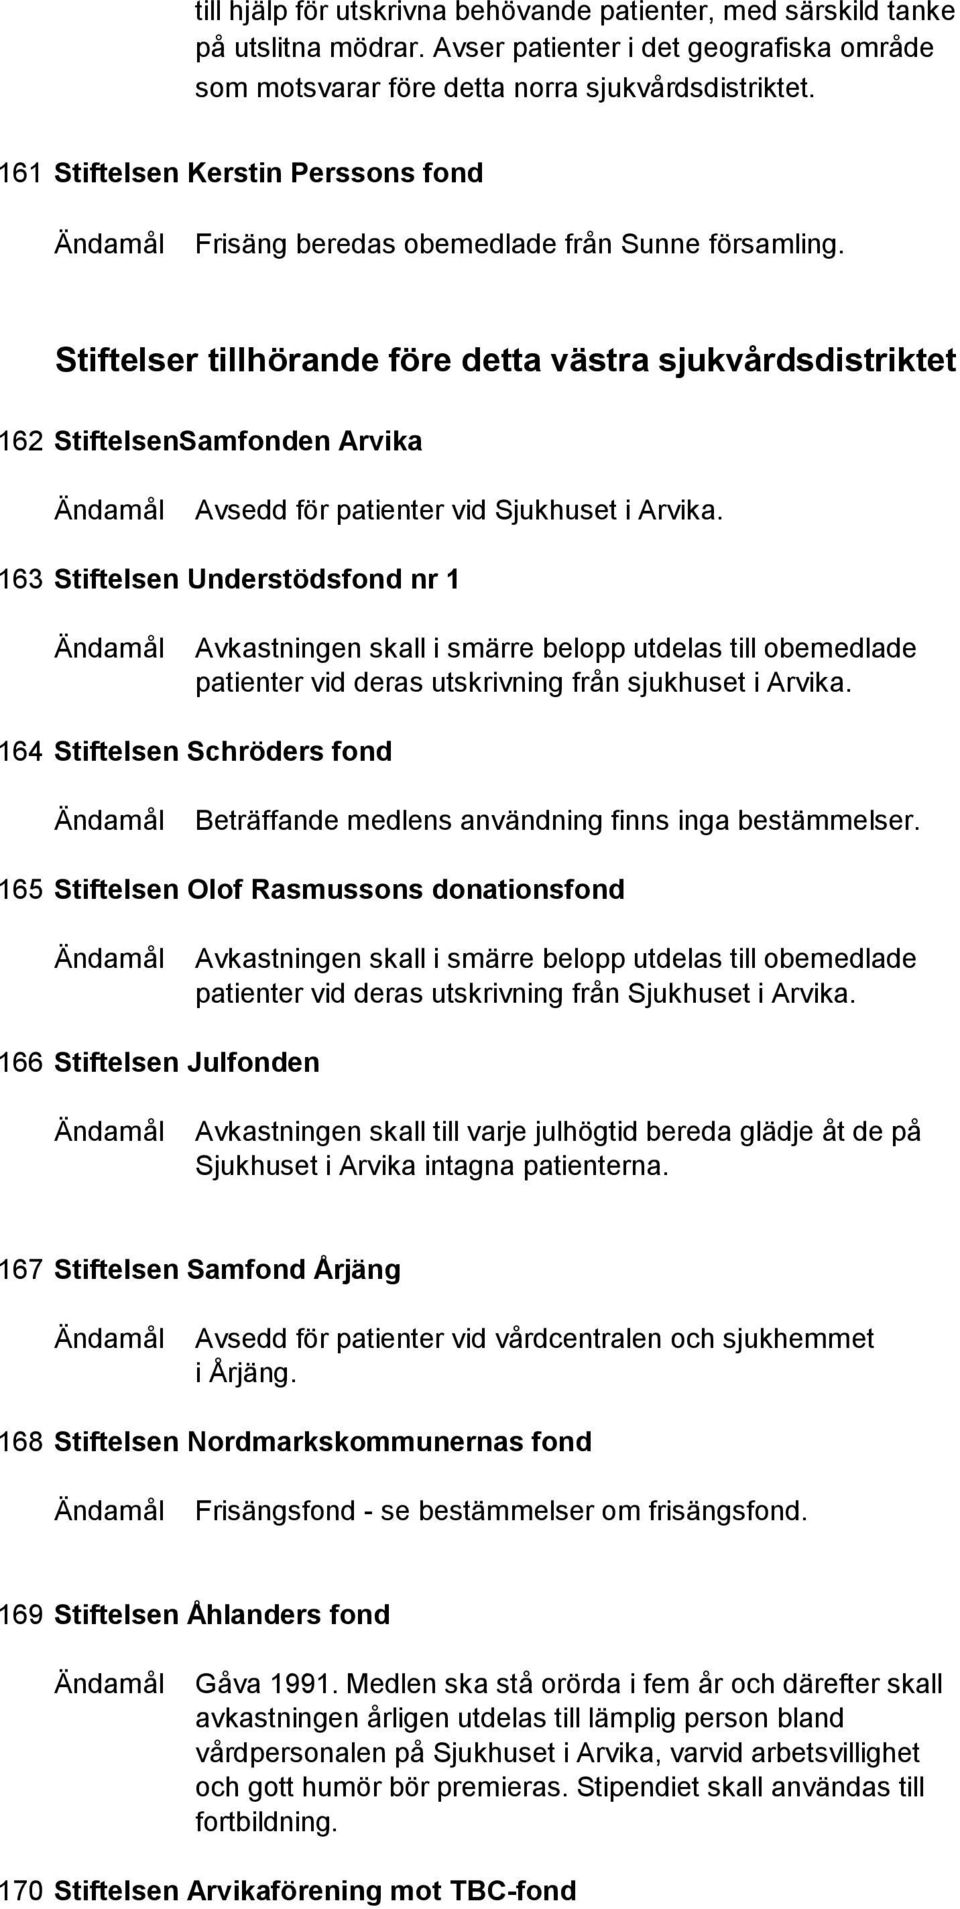 Stiftelser och fonder i Landstinget i Värmland - PDF Gratis ...